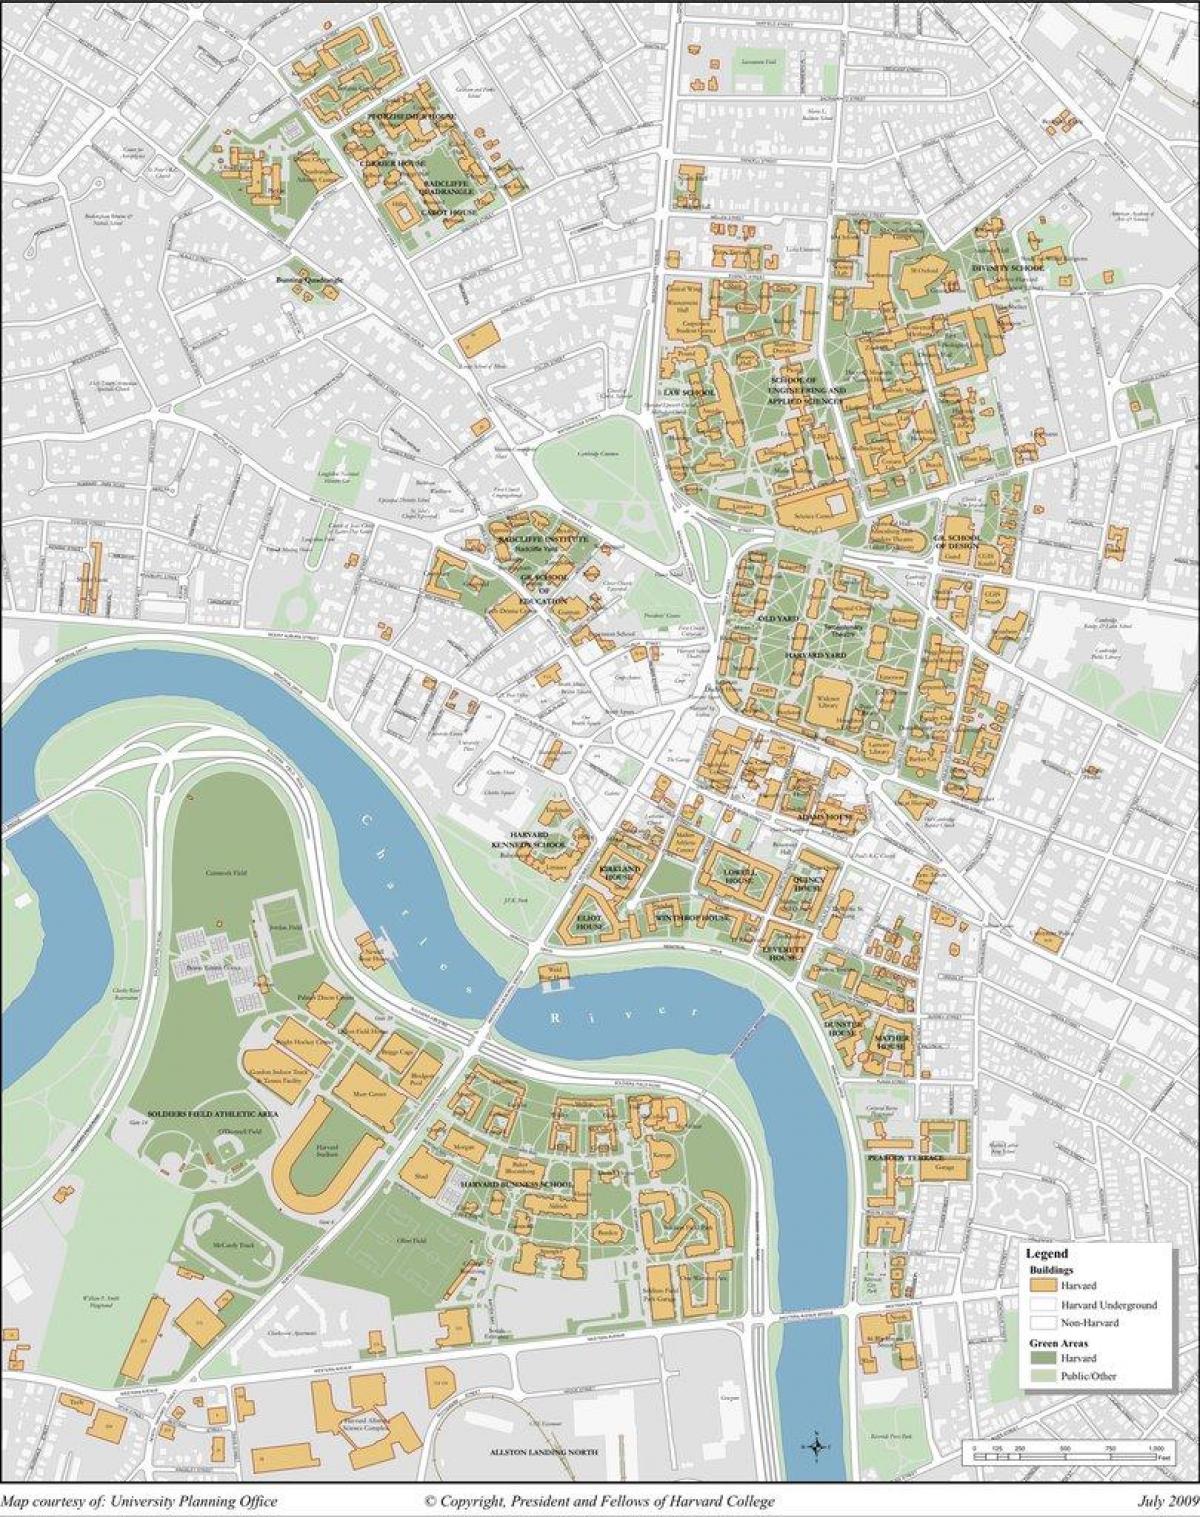 हार्वर्ड विश्वविद्यालय के एक कैम्पस का नक्शा